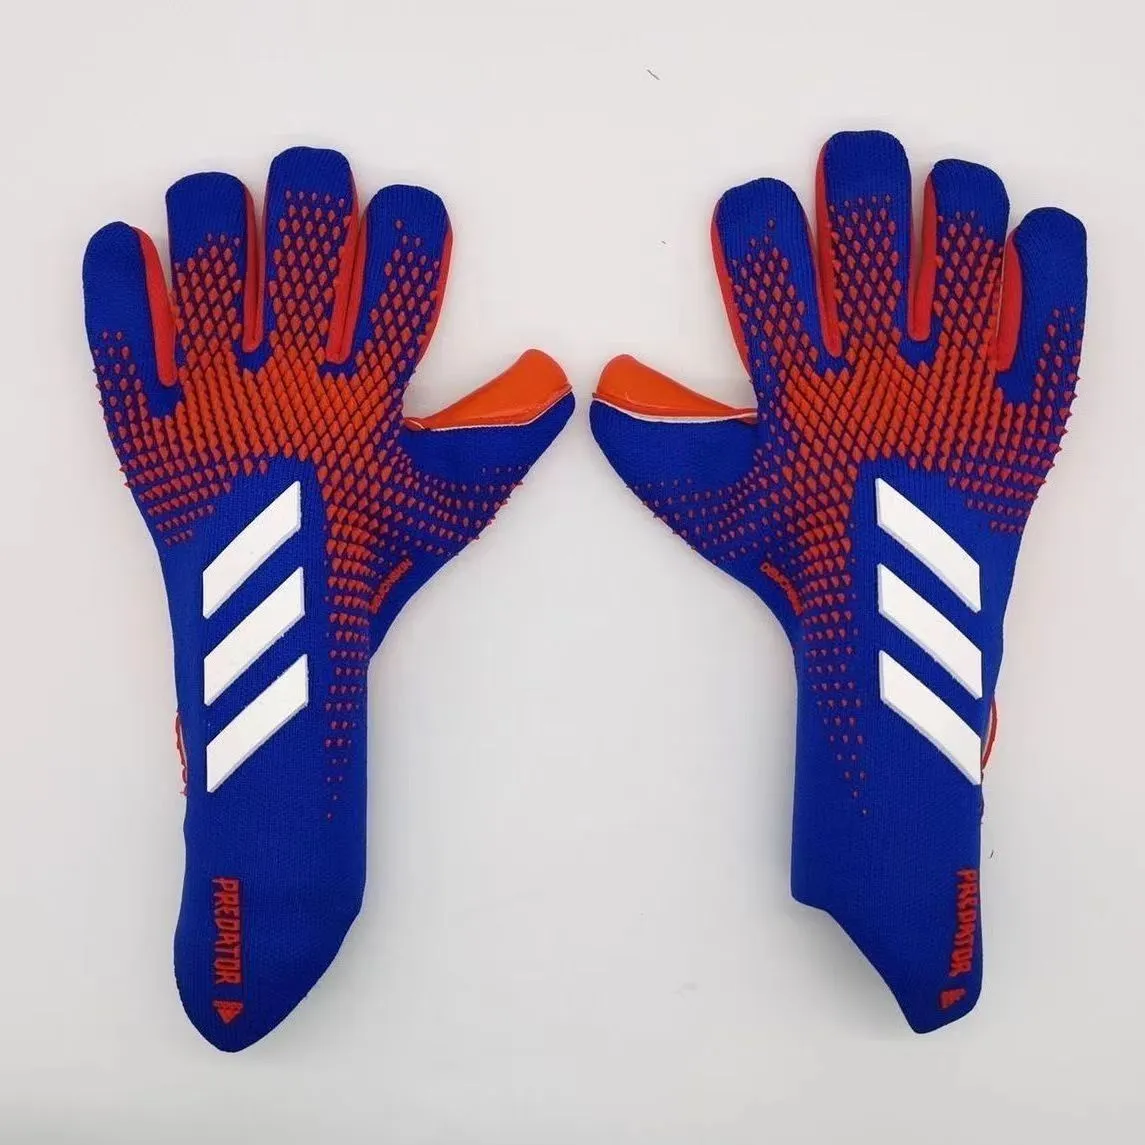 Sport Soccer Goalie Goalkeeper Gloves for Kids Boys Children College Mens Football Gloves with Strong Grips Palms Kits3333